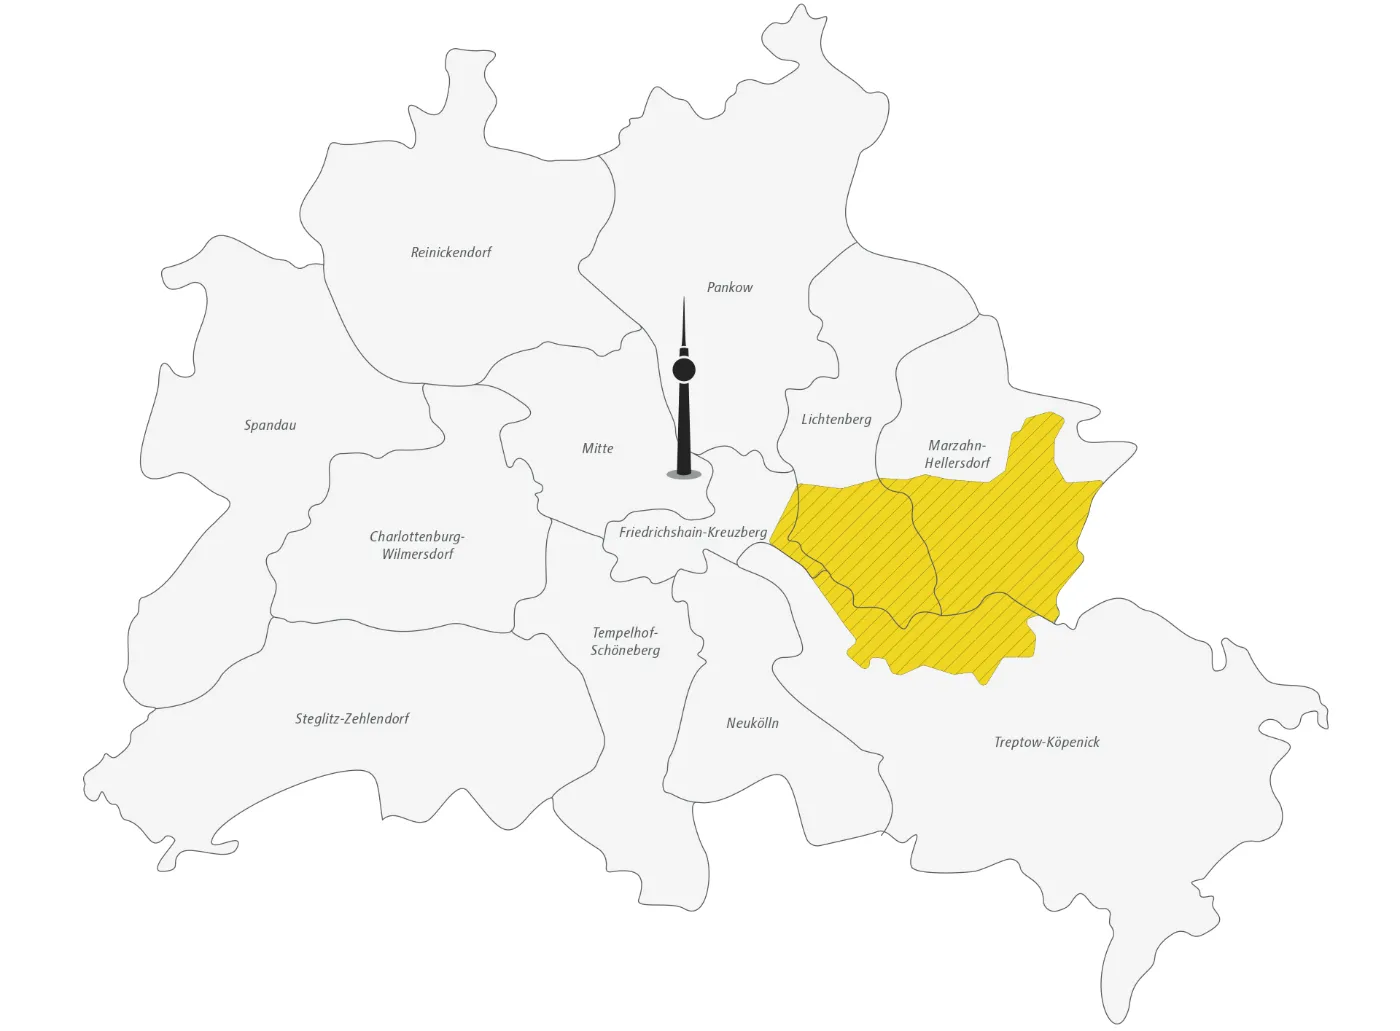 Das Bild zeigt eine Skizze von Berlin und seinen Bezirken. Der Fernsehturm ist zur Orientierung im Bezirk Mitte eingezeichnet. Neben der Unterteilung in die Bezirke, die namentlich aufgeführt sind, ist außerdem das Bediengebiet des BVG Muva in Teilen der Bezirke Lichtenberg, Marzahn-Hellersdorf und Treptow-Köpenick gelb eingezeichnet.